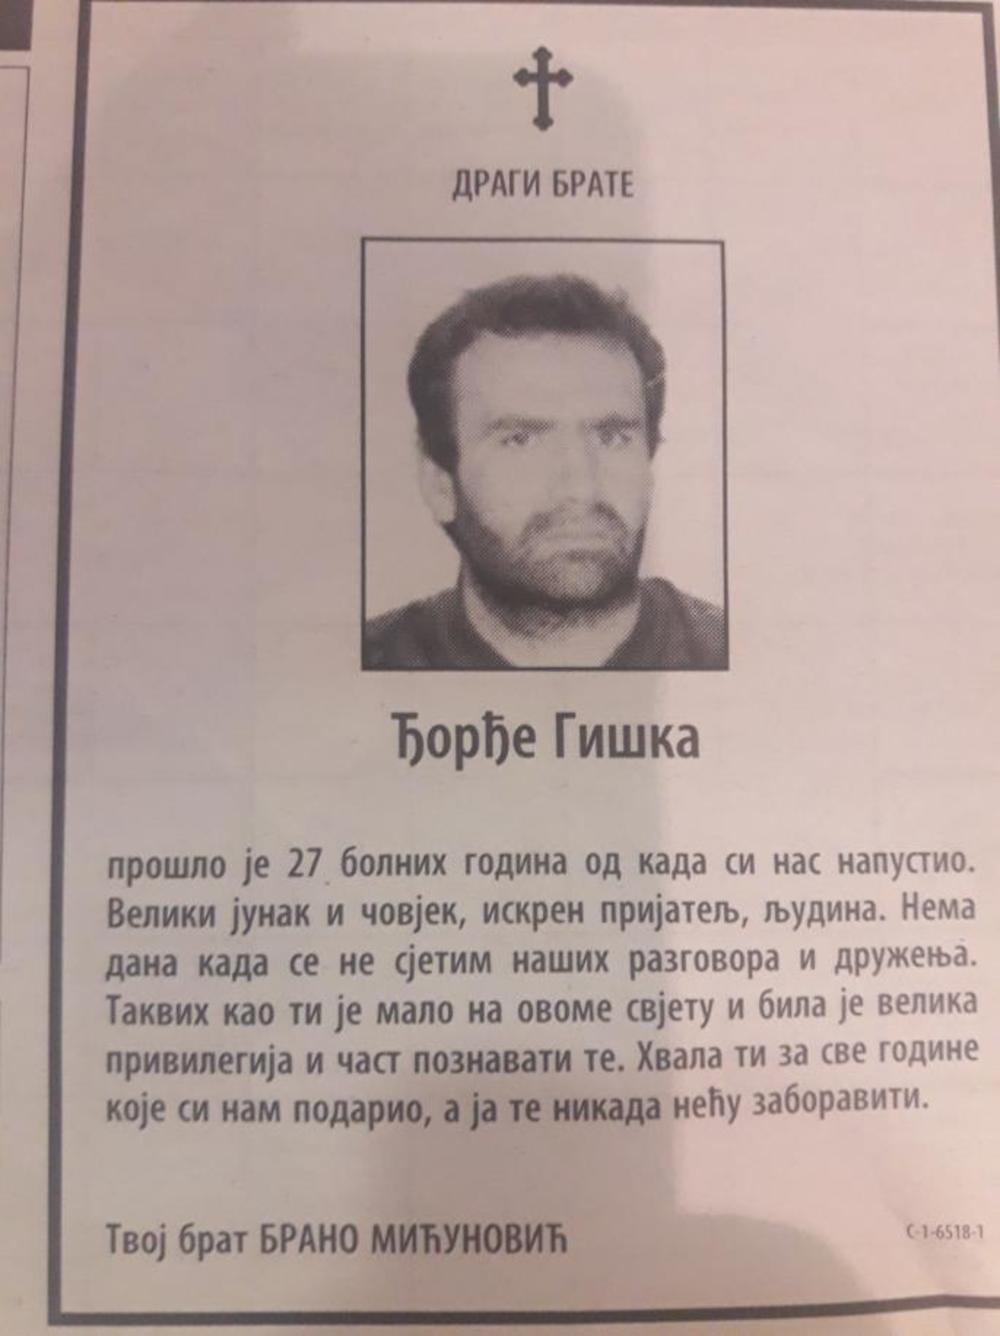 Čitulja koju je Brano mićunović dao u beogradski novinama  